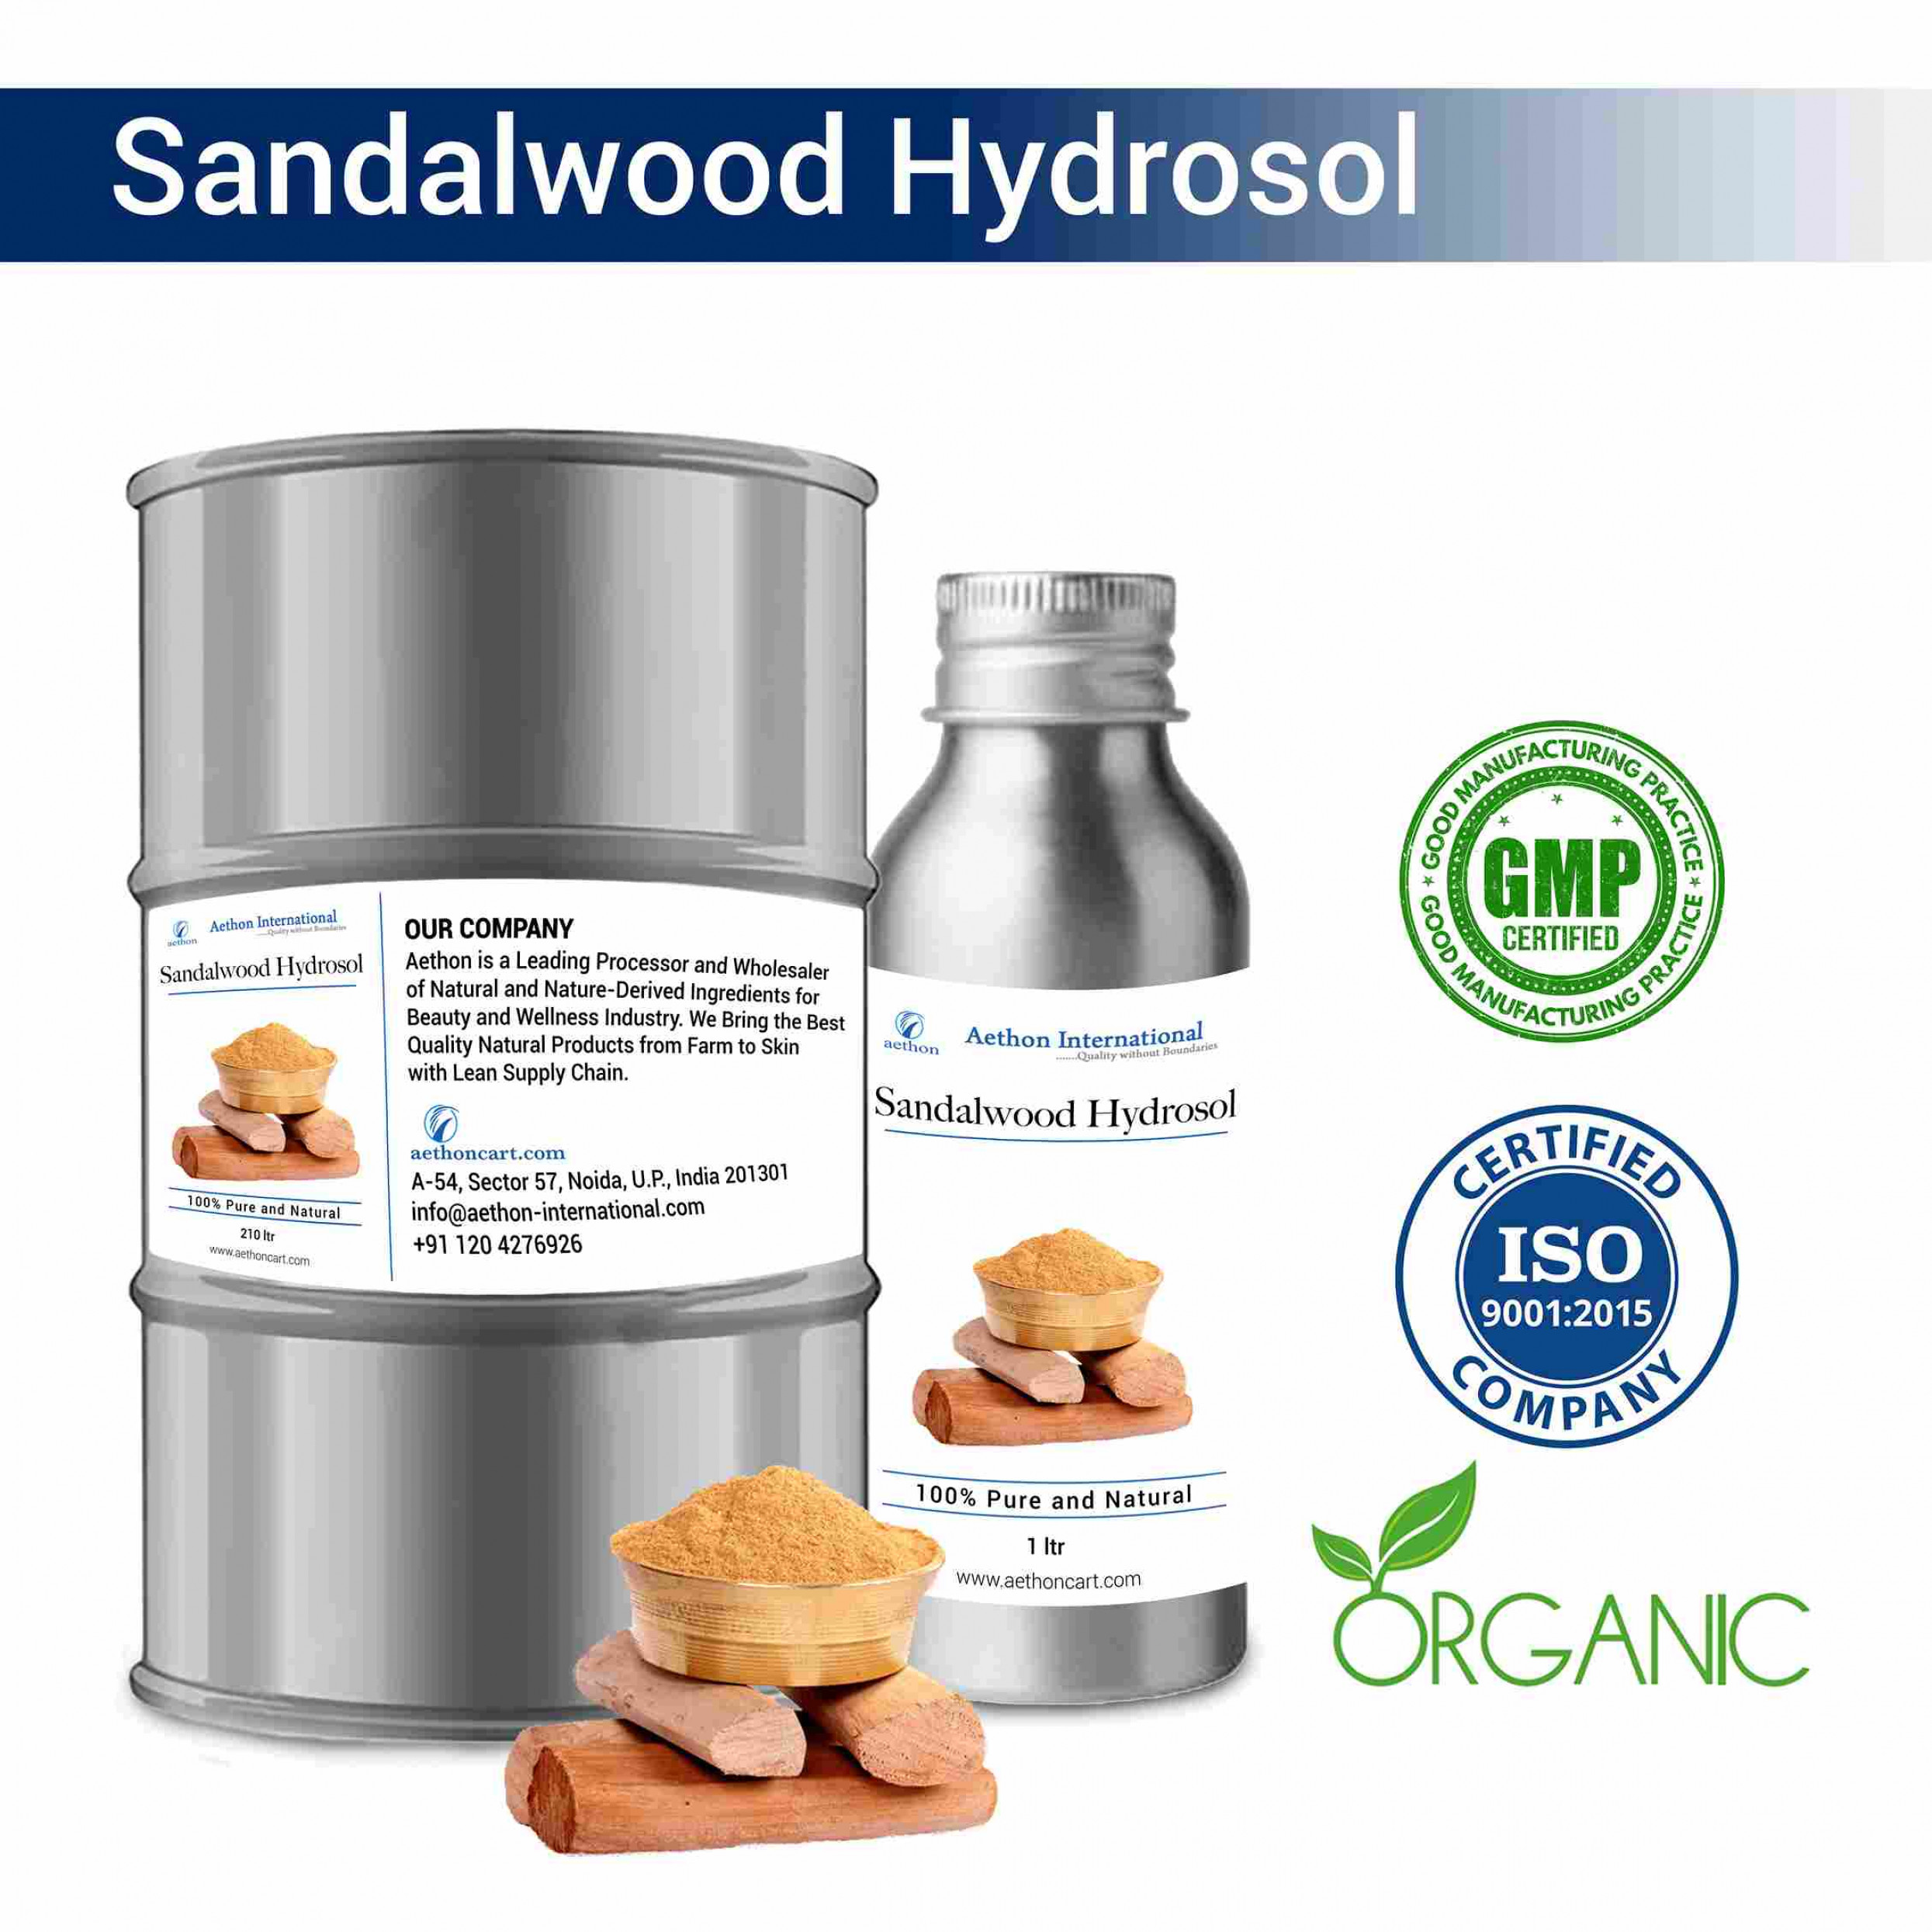 Sandalwood Hydrosol